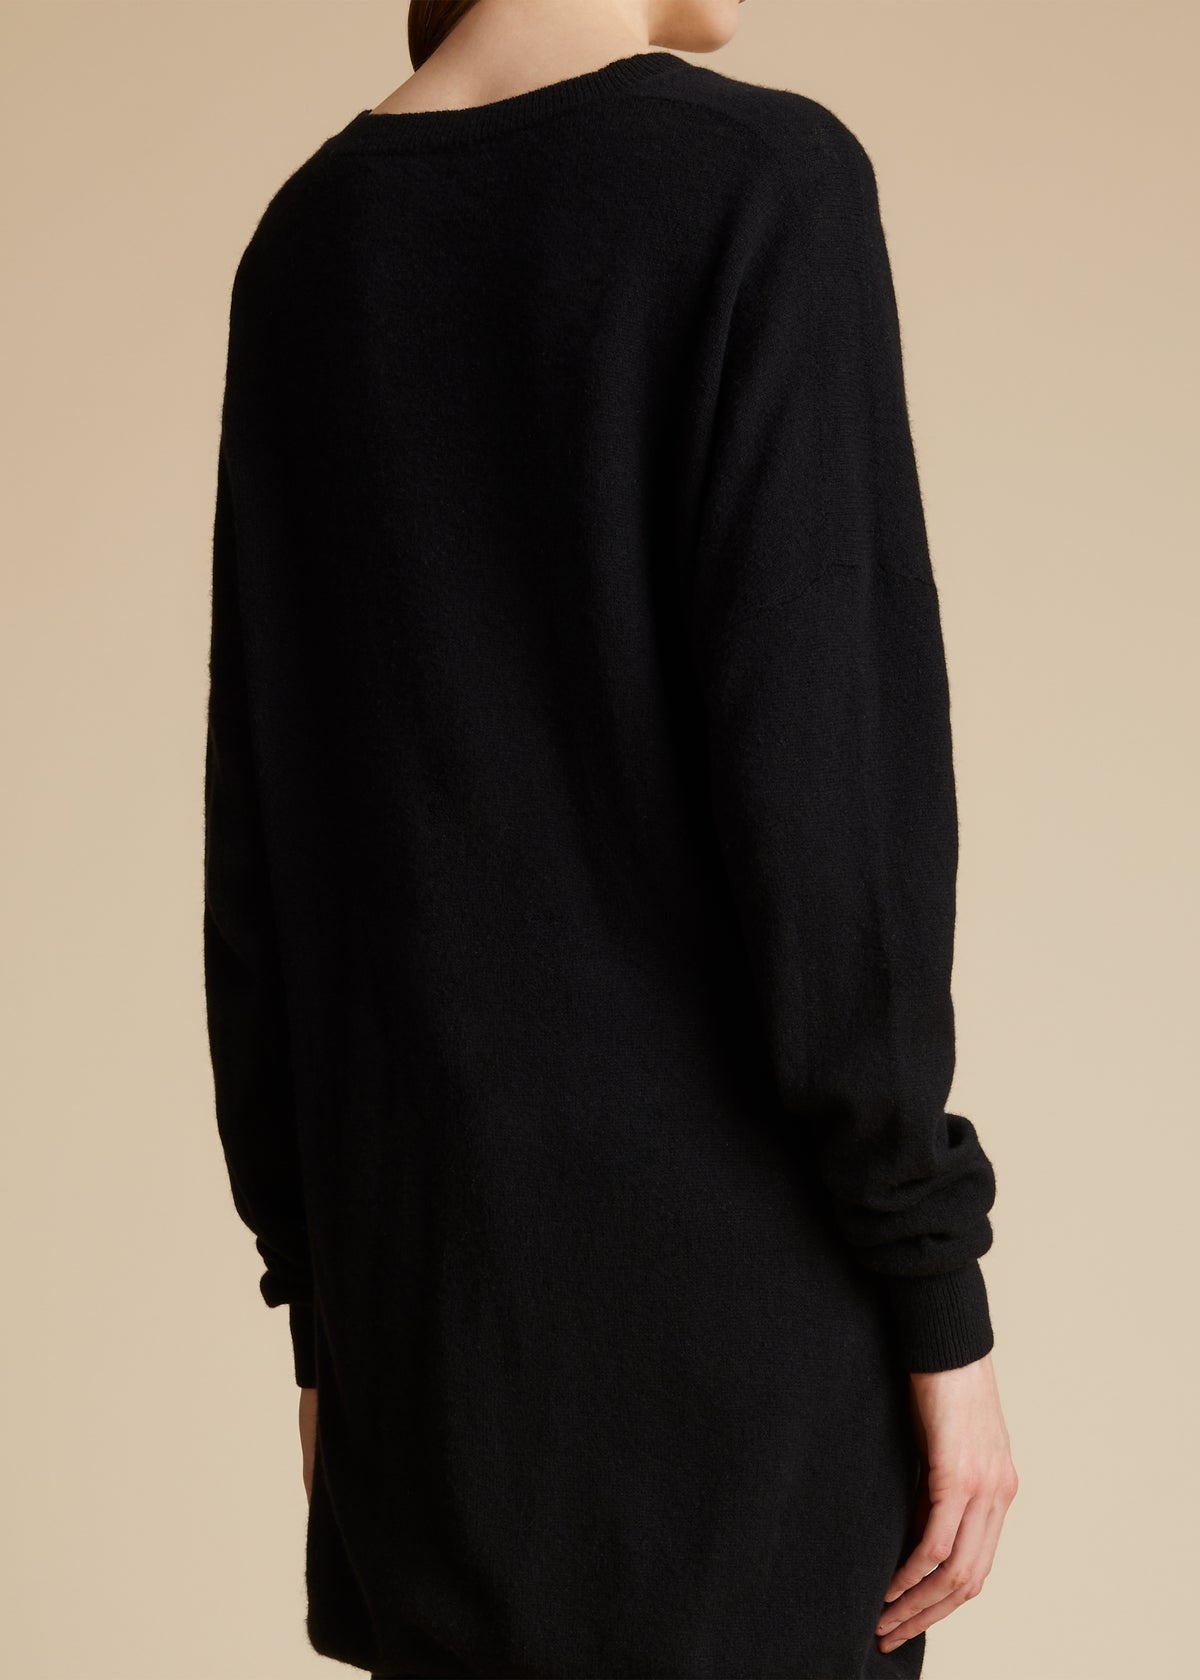 The Marano Sweater in Black - 4